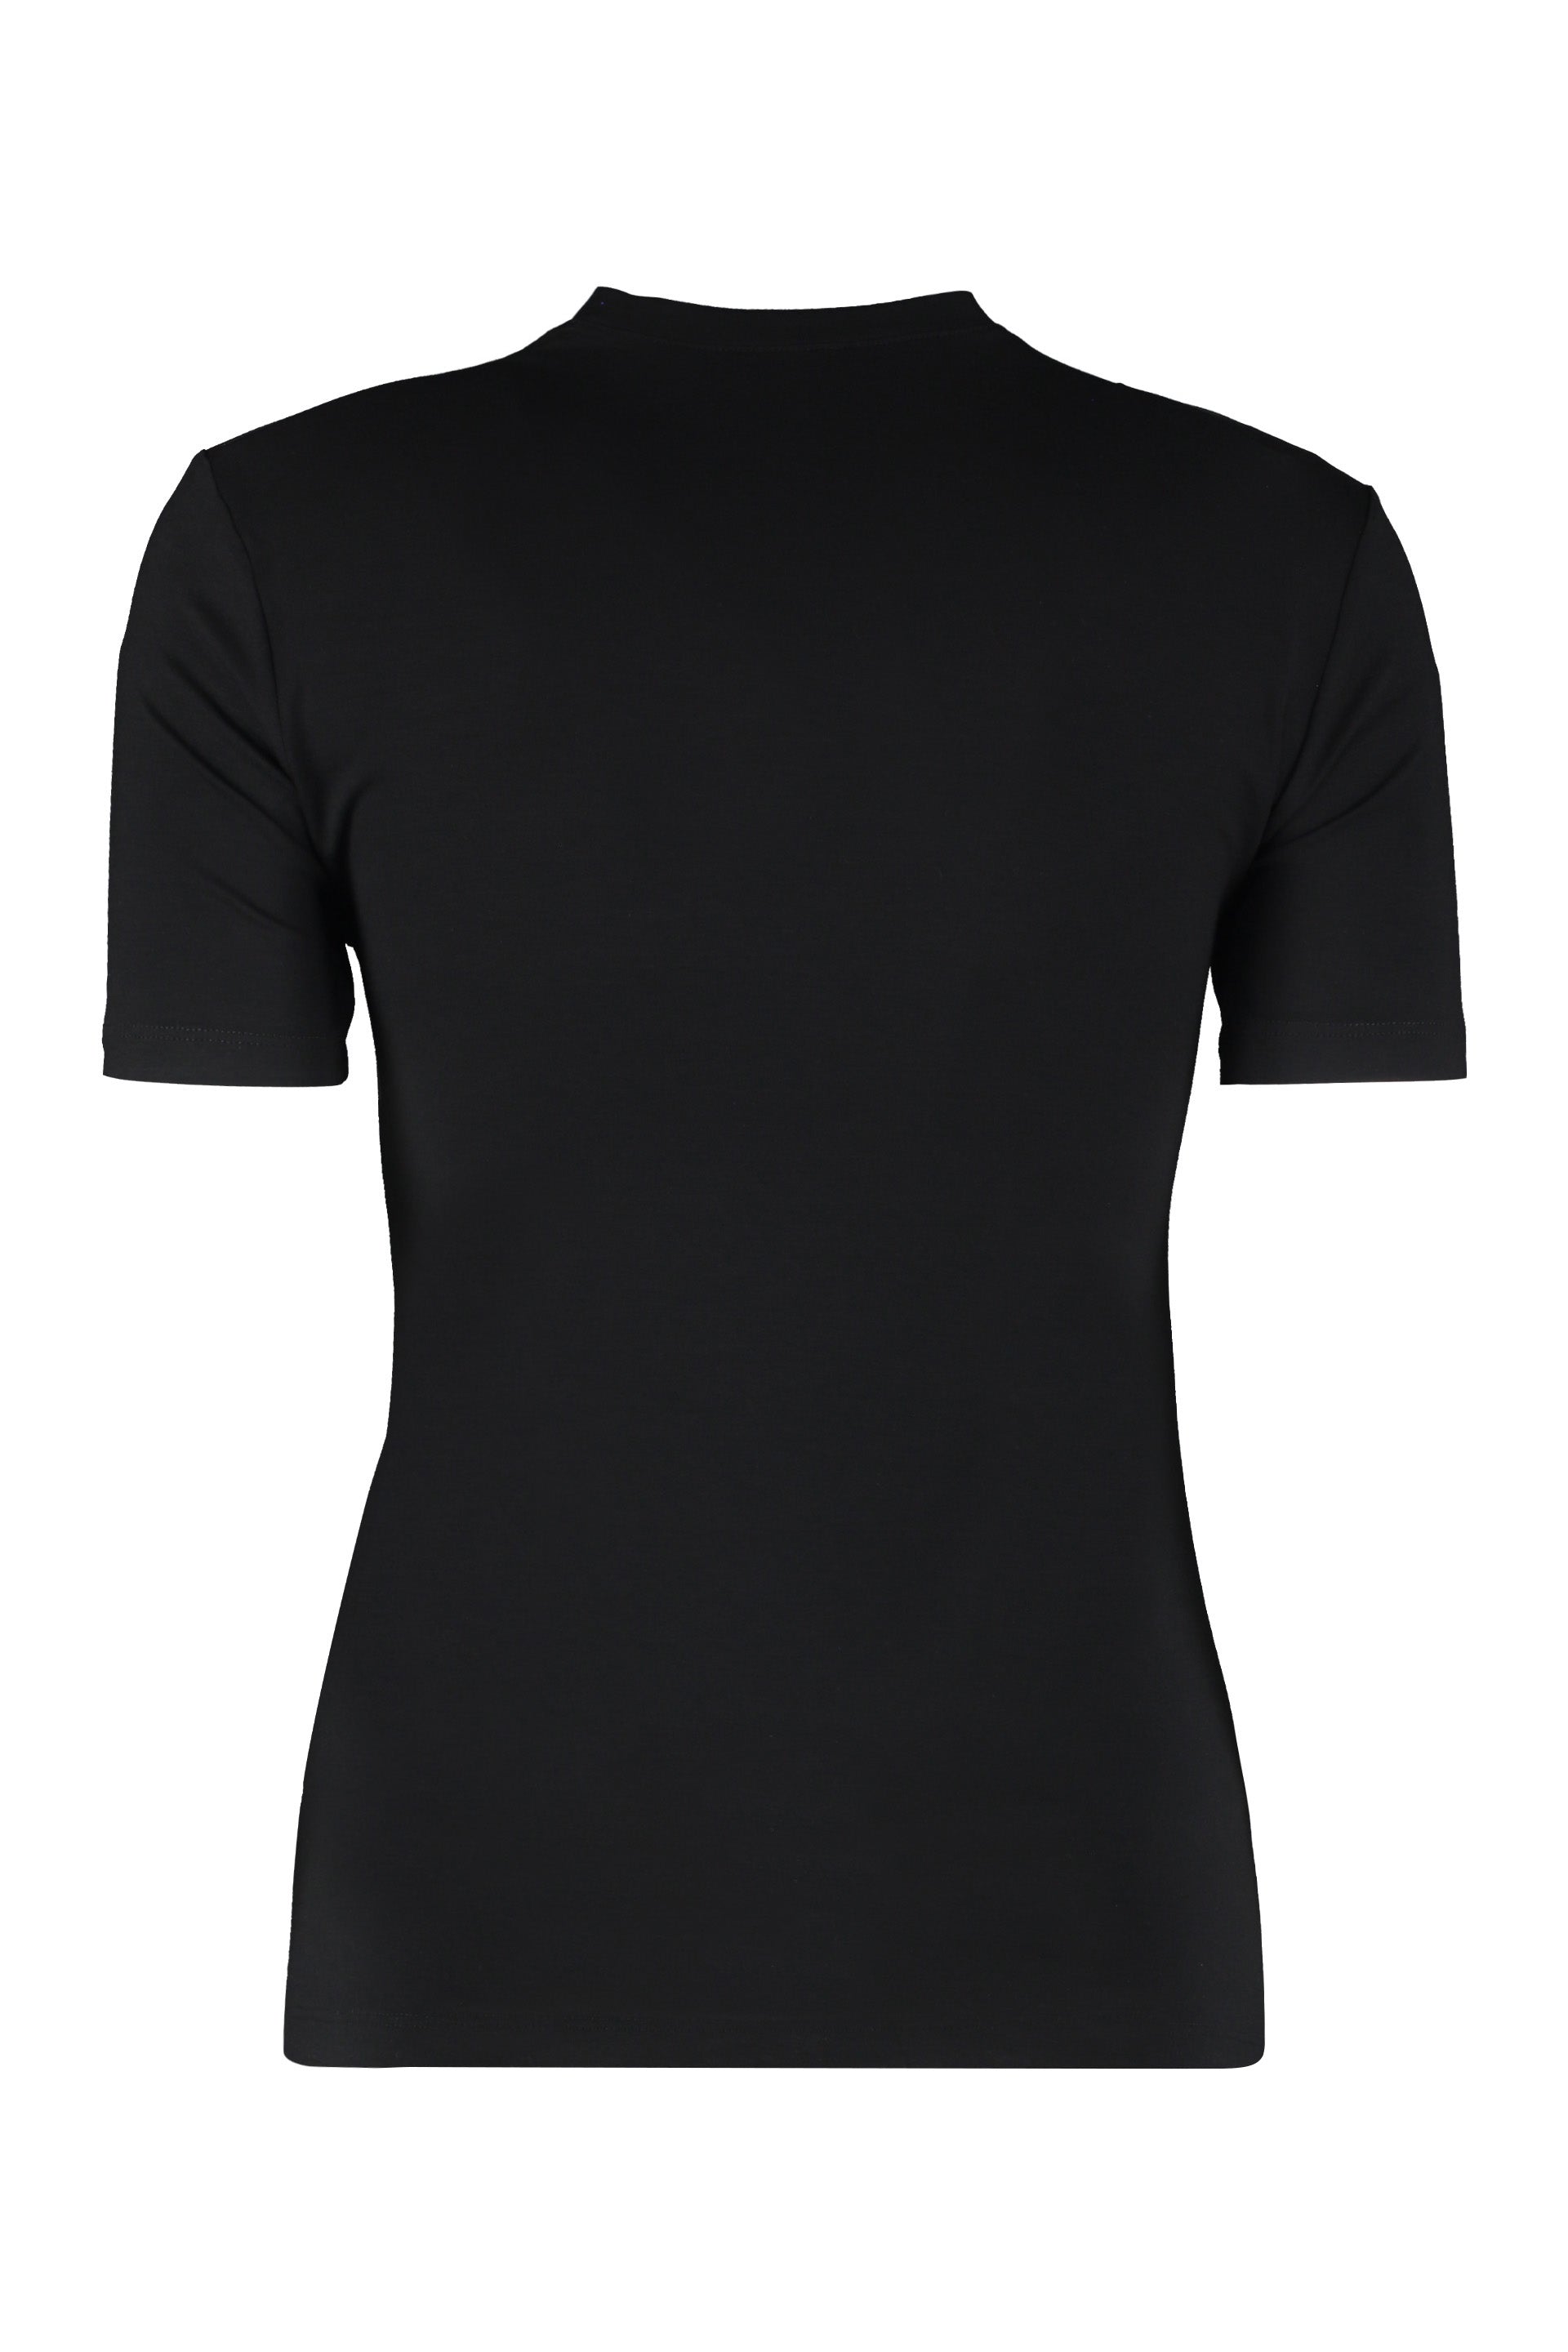 Logo crew-neck t-shirt-Versace-OUTLET-SALE-ARCHIVIST